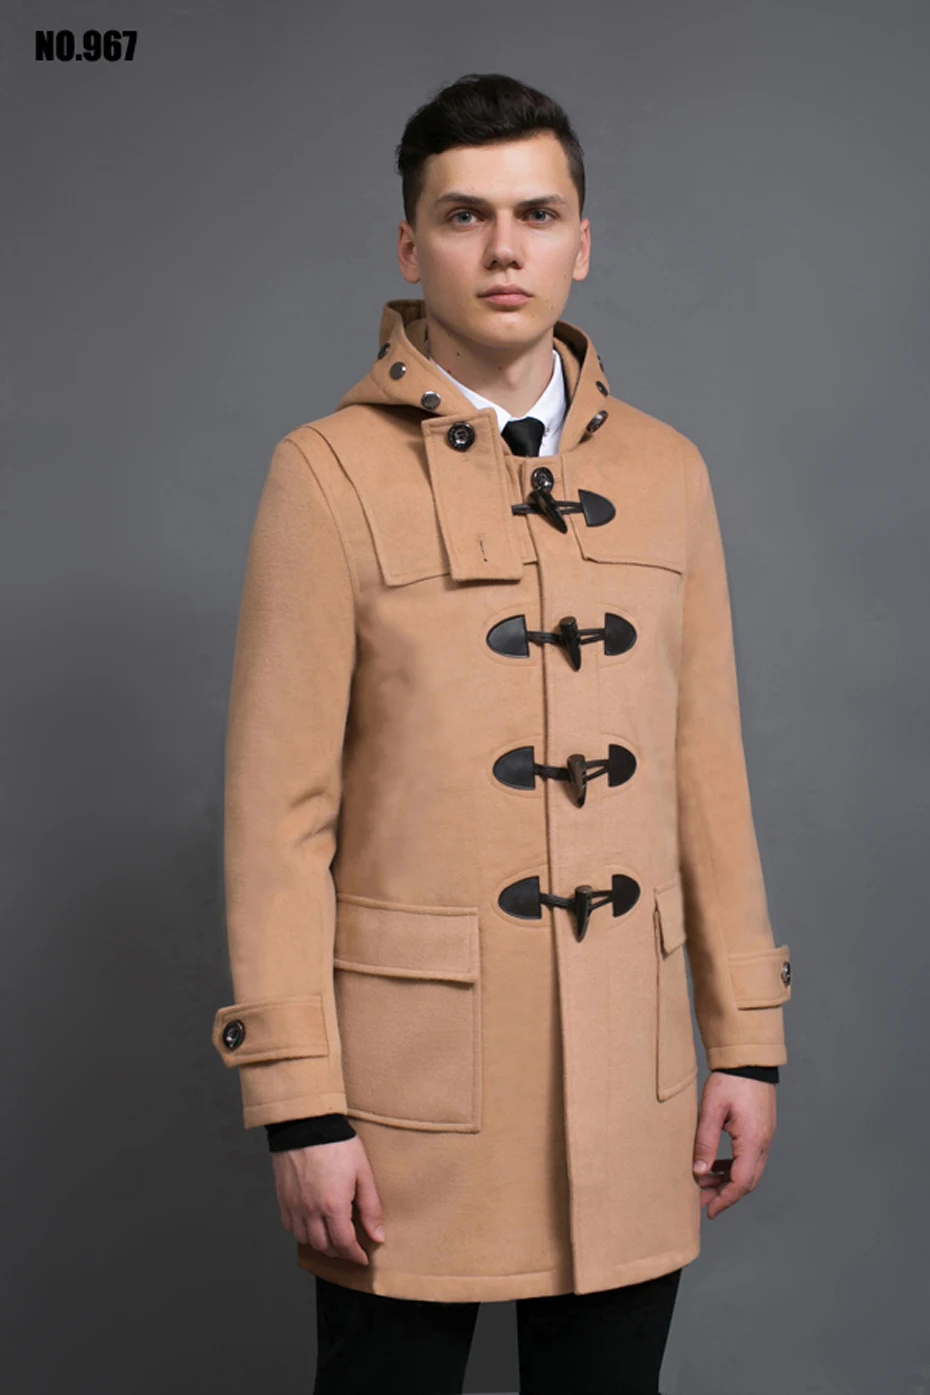 Casaco masculino, зимнее Мужское пальто, пальто с пряжкой, мужское шерстяное пальто с капюшоном, мужская куртка, Мужская верхняя одежда, теплое пальто#18222 Holyrising